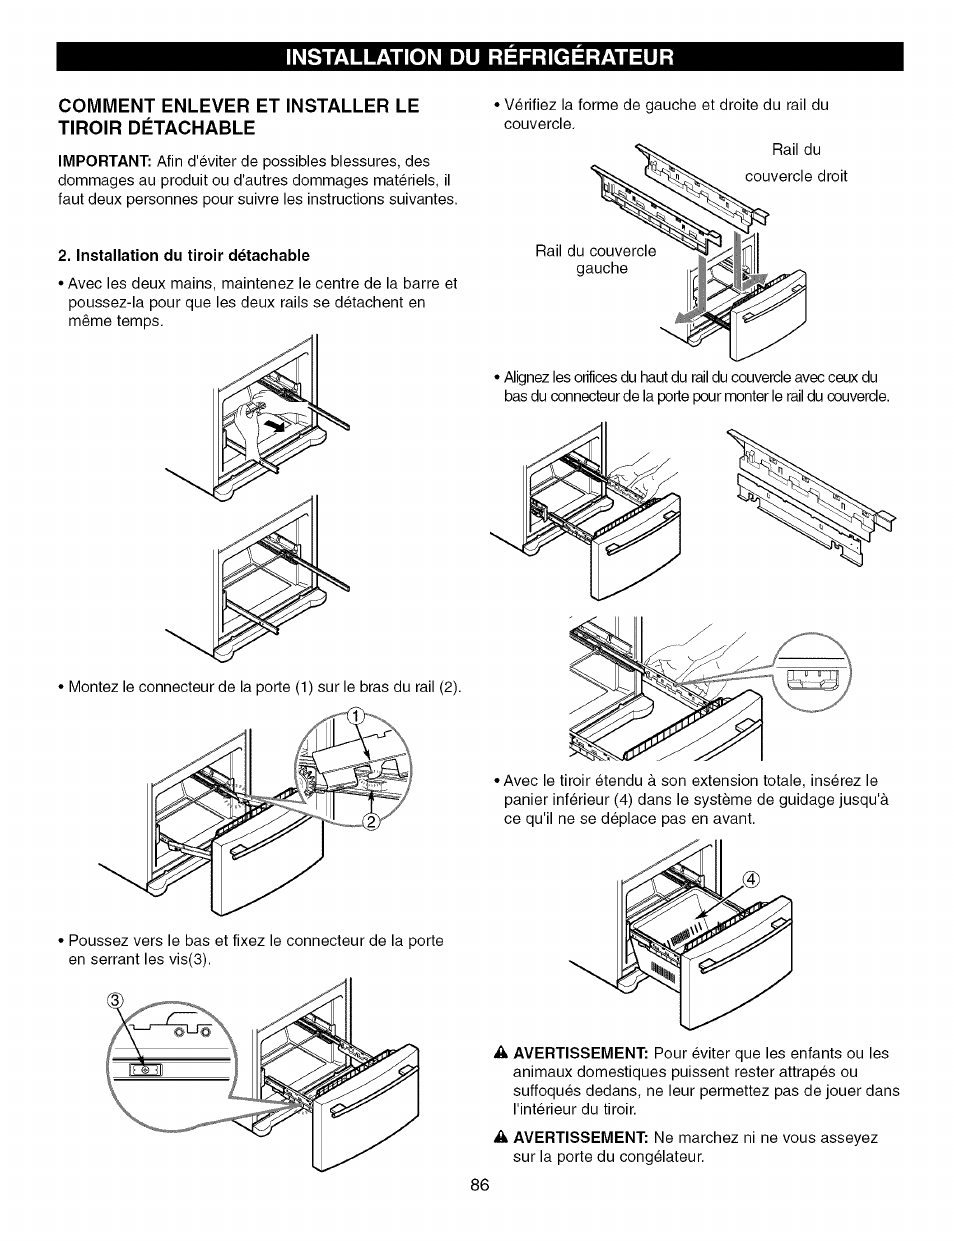 Comment enlever et installer le tiroir détachable, Installation du  refrigerateur | Kenmore TRIO 795.7757 User Manual | Page 86 / 115